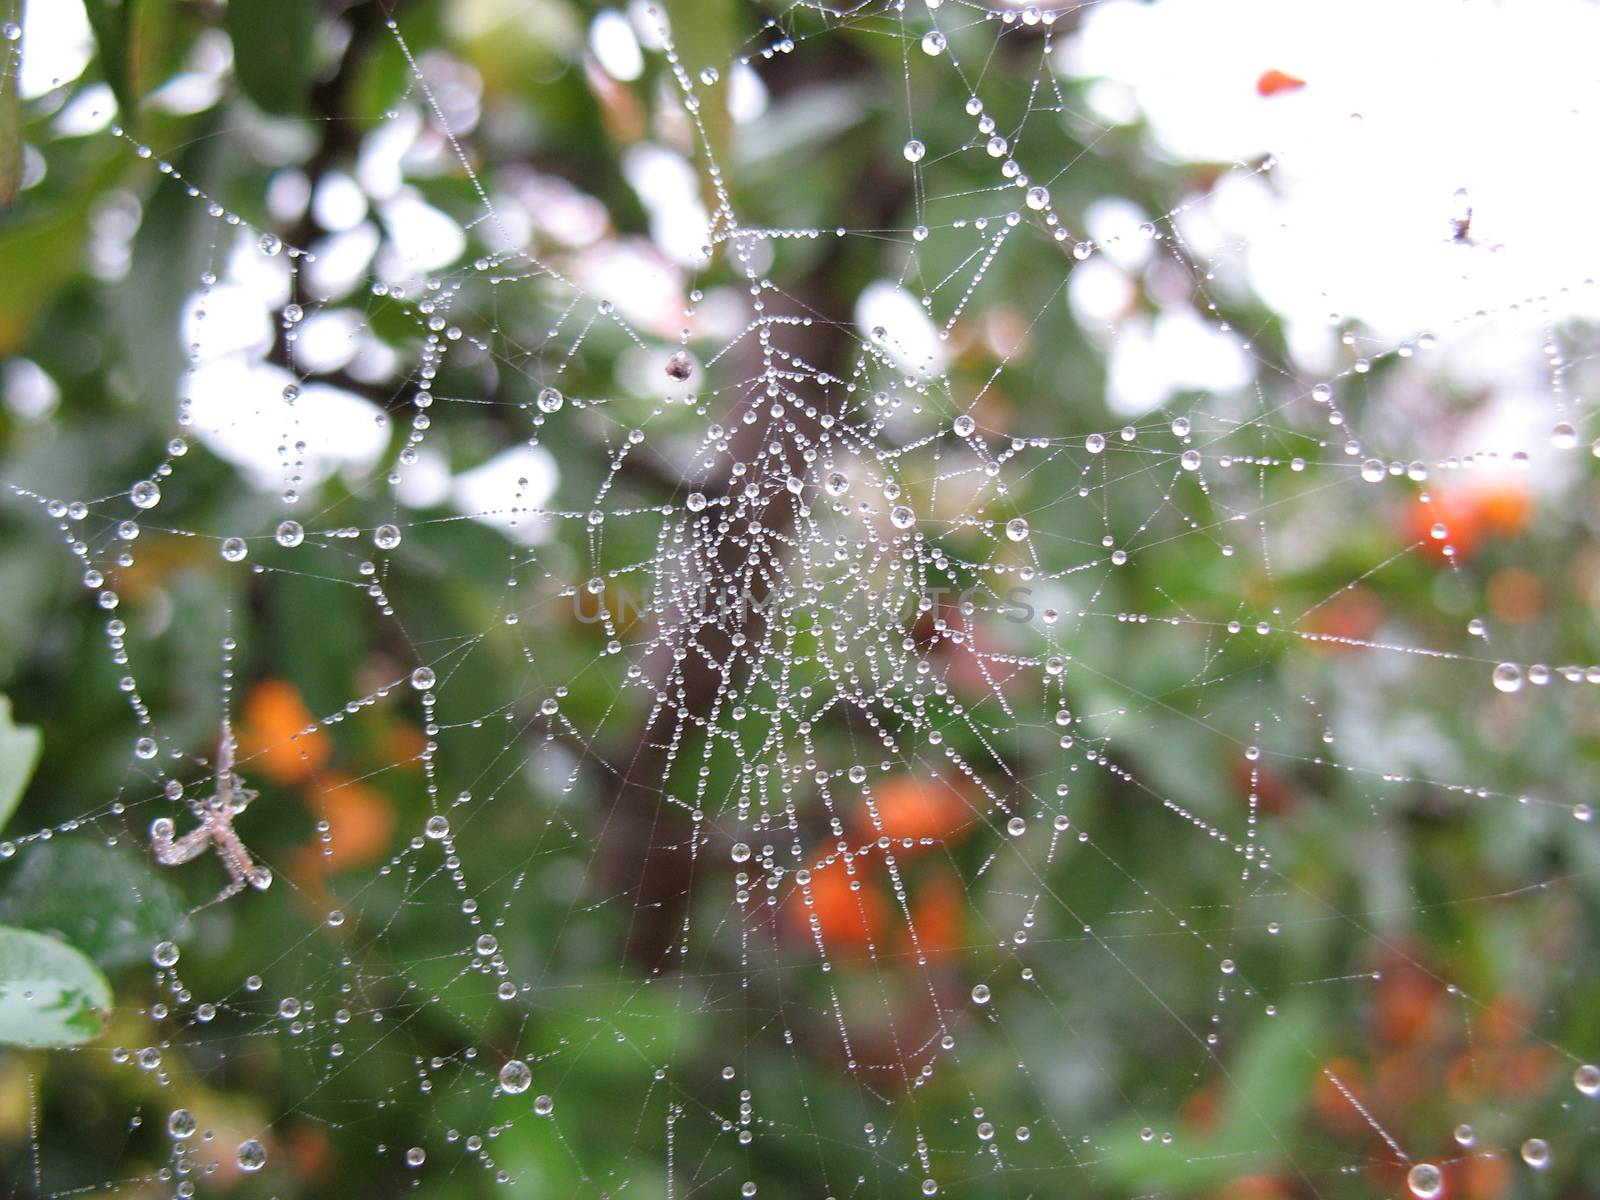 Wet cobweb by tozzimr